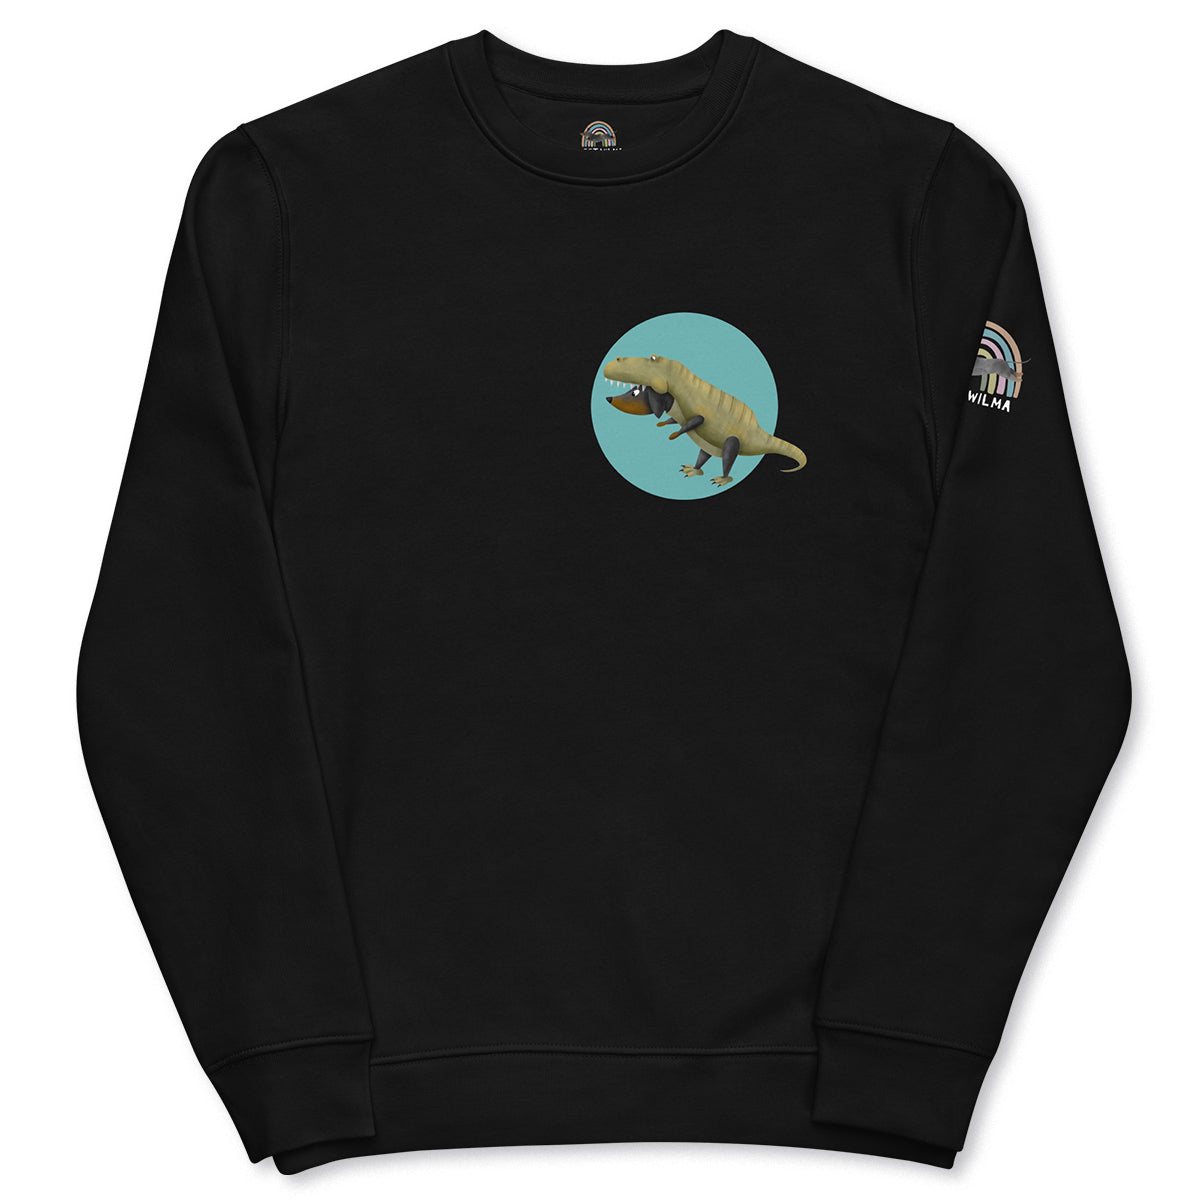 Unisex Eco Sweatshirt "D-Rex"